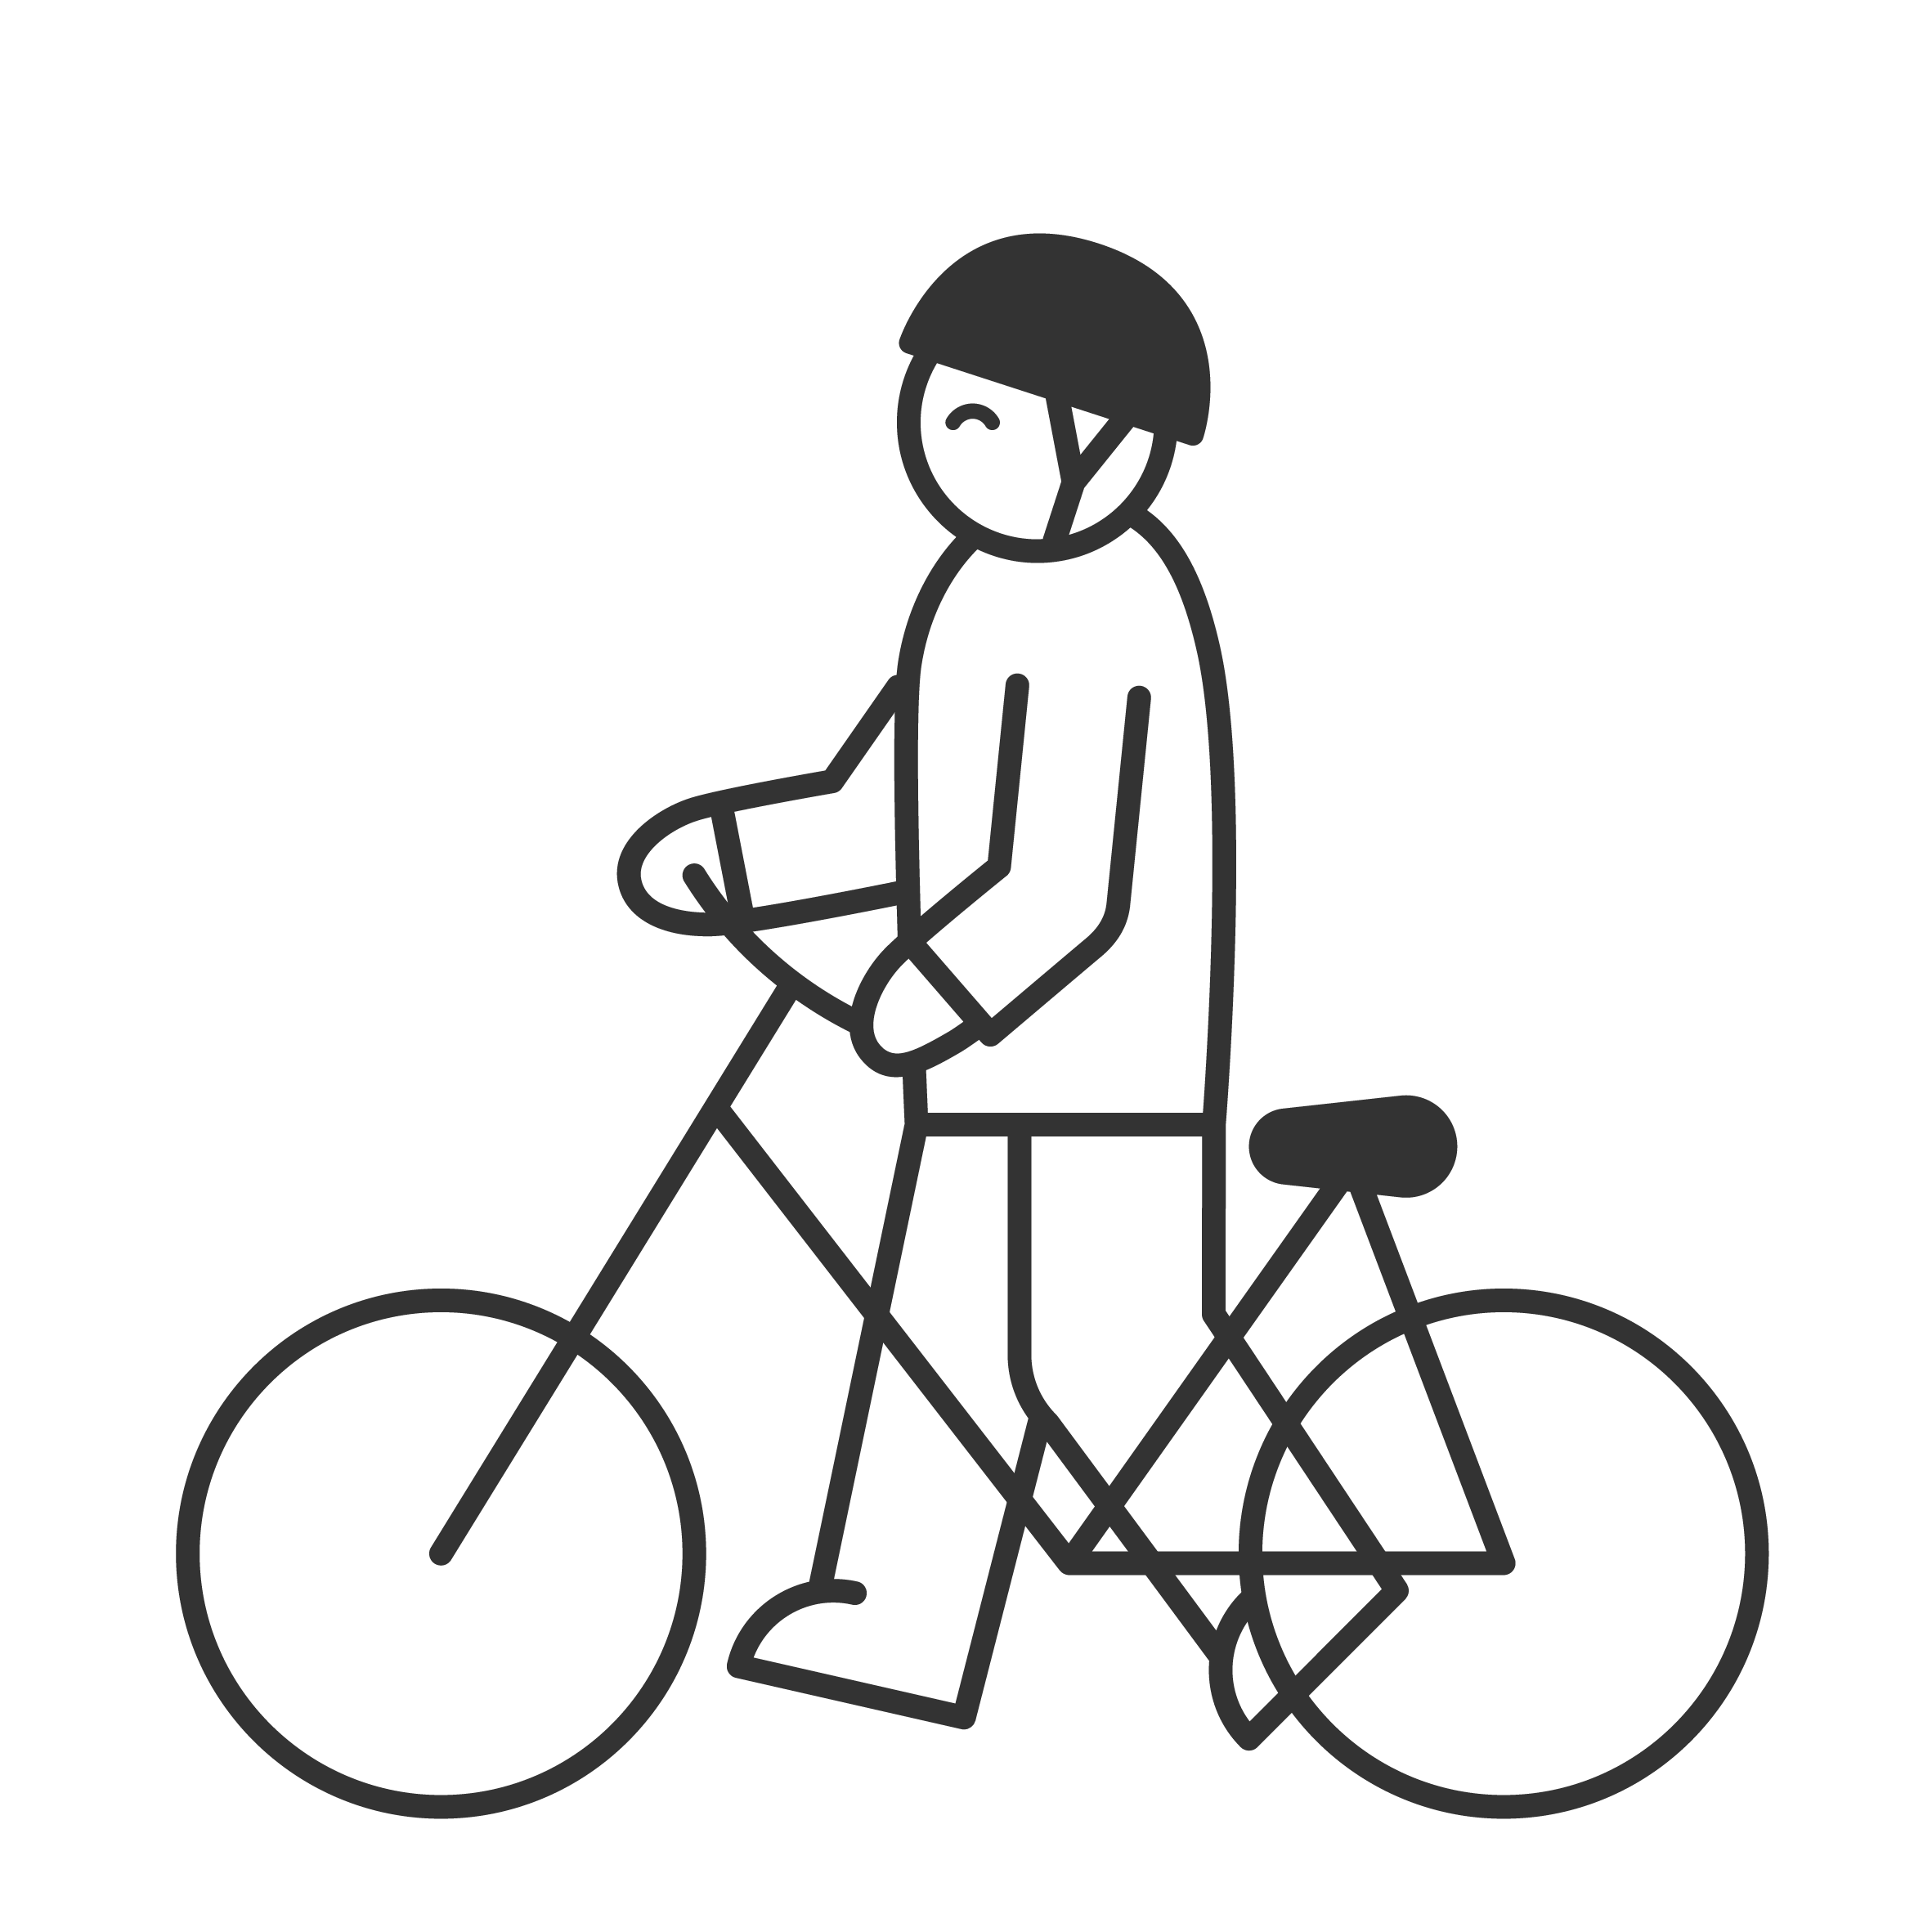 Icon of person walking a bike wearing a helmet